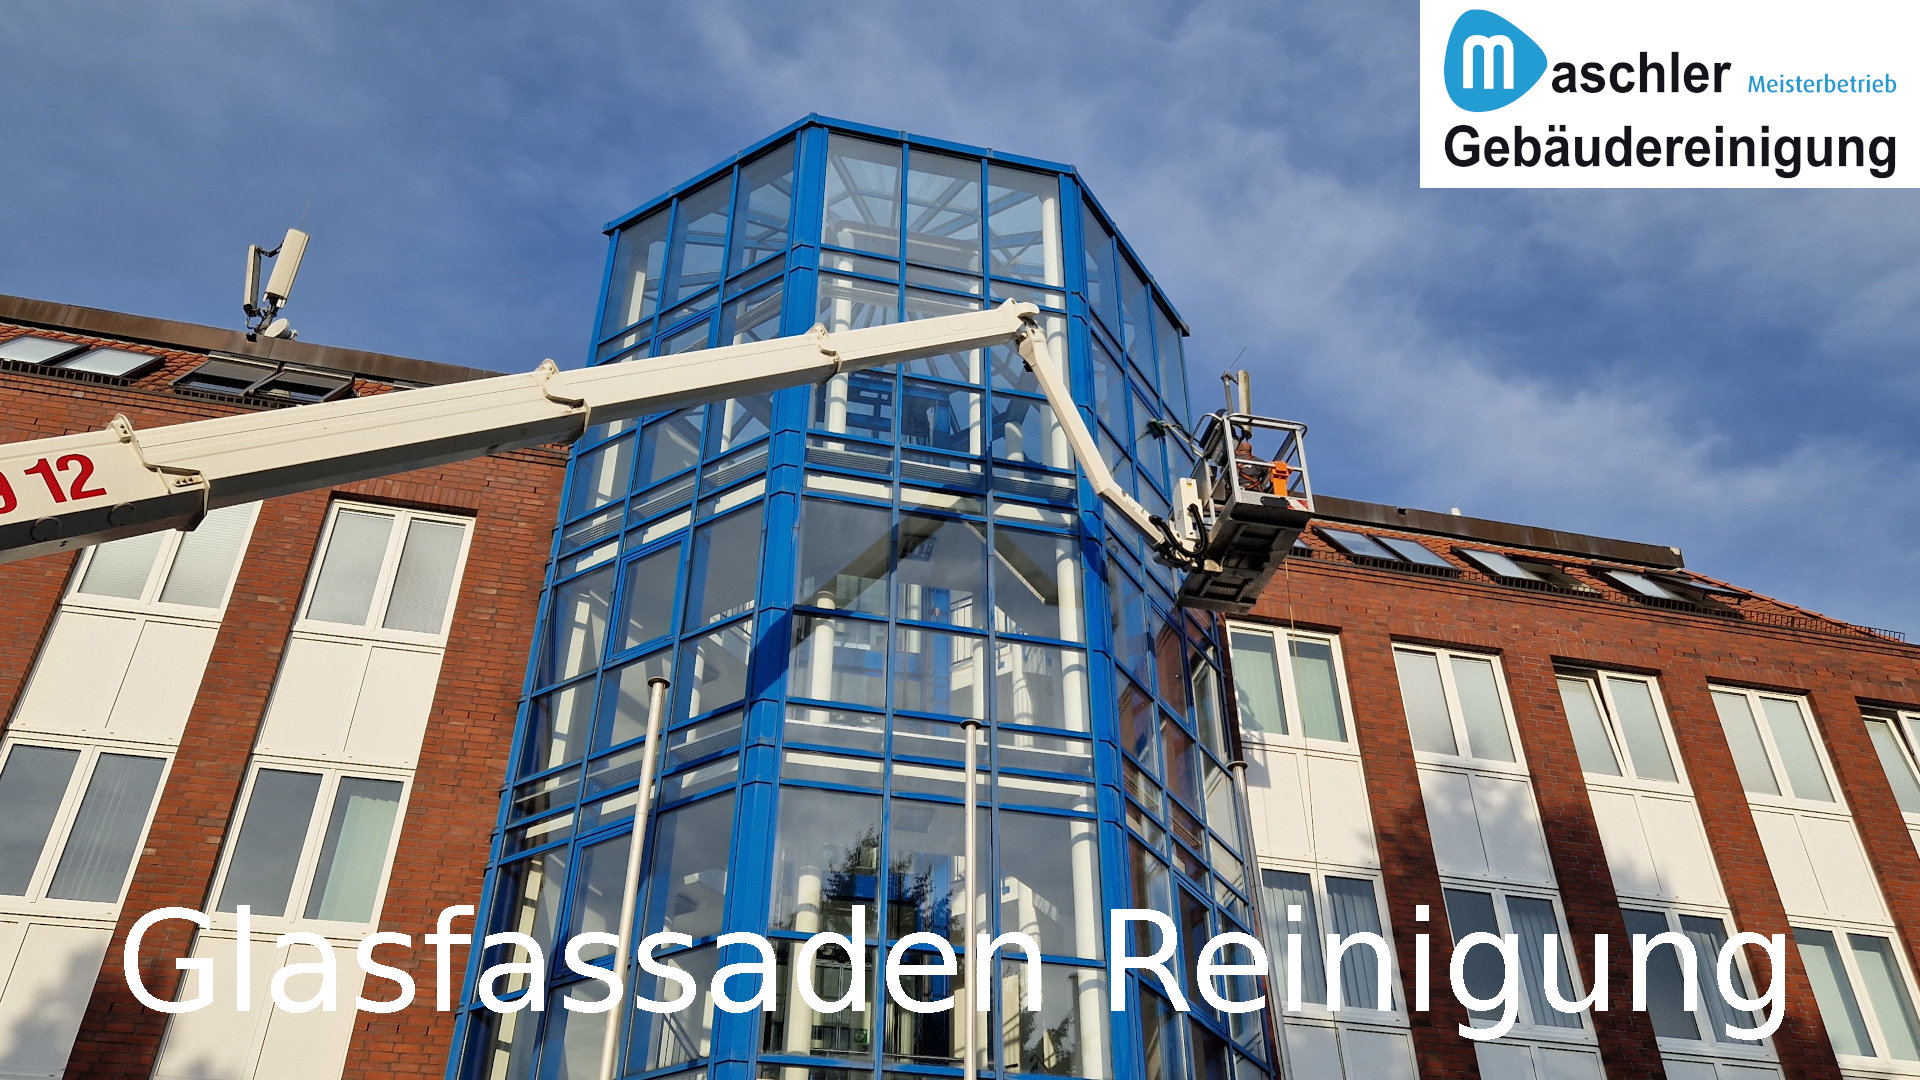 Glasfassadenreinigung - Gebäudereinigung Maschler Rostock